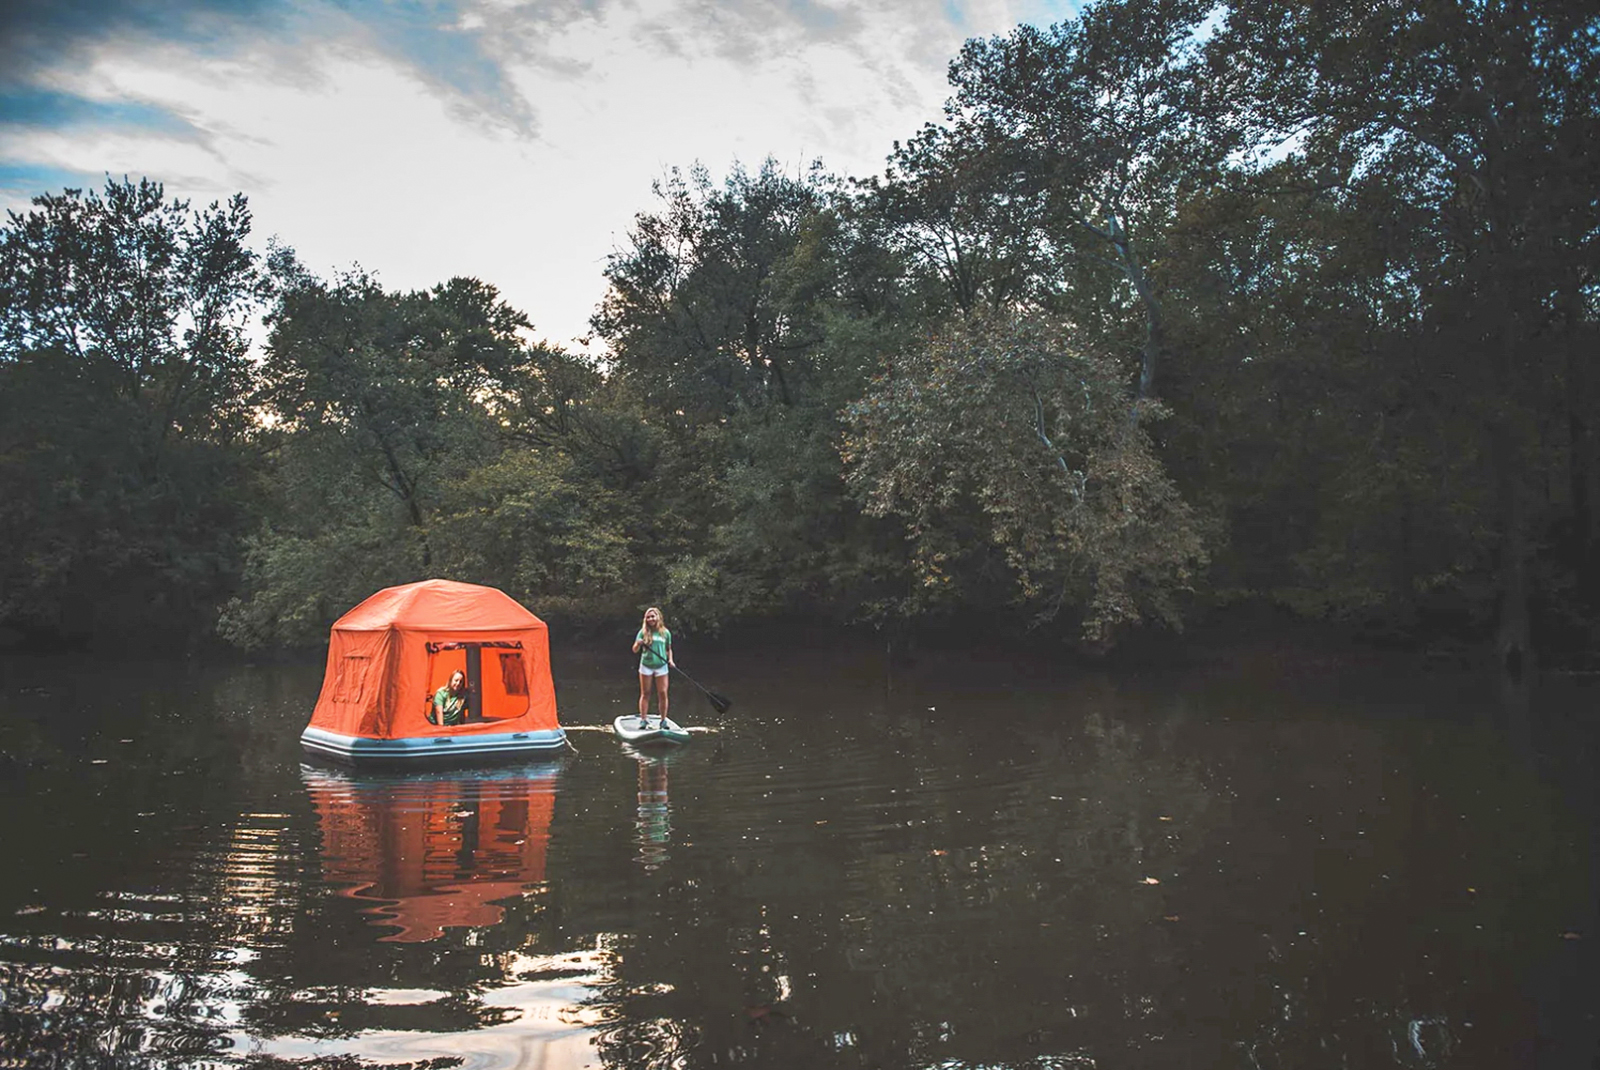 La tente flottante révolutionne l'expérience du camping. © SmithFly